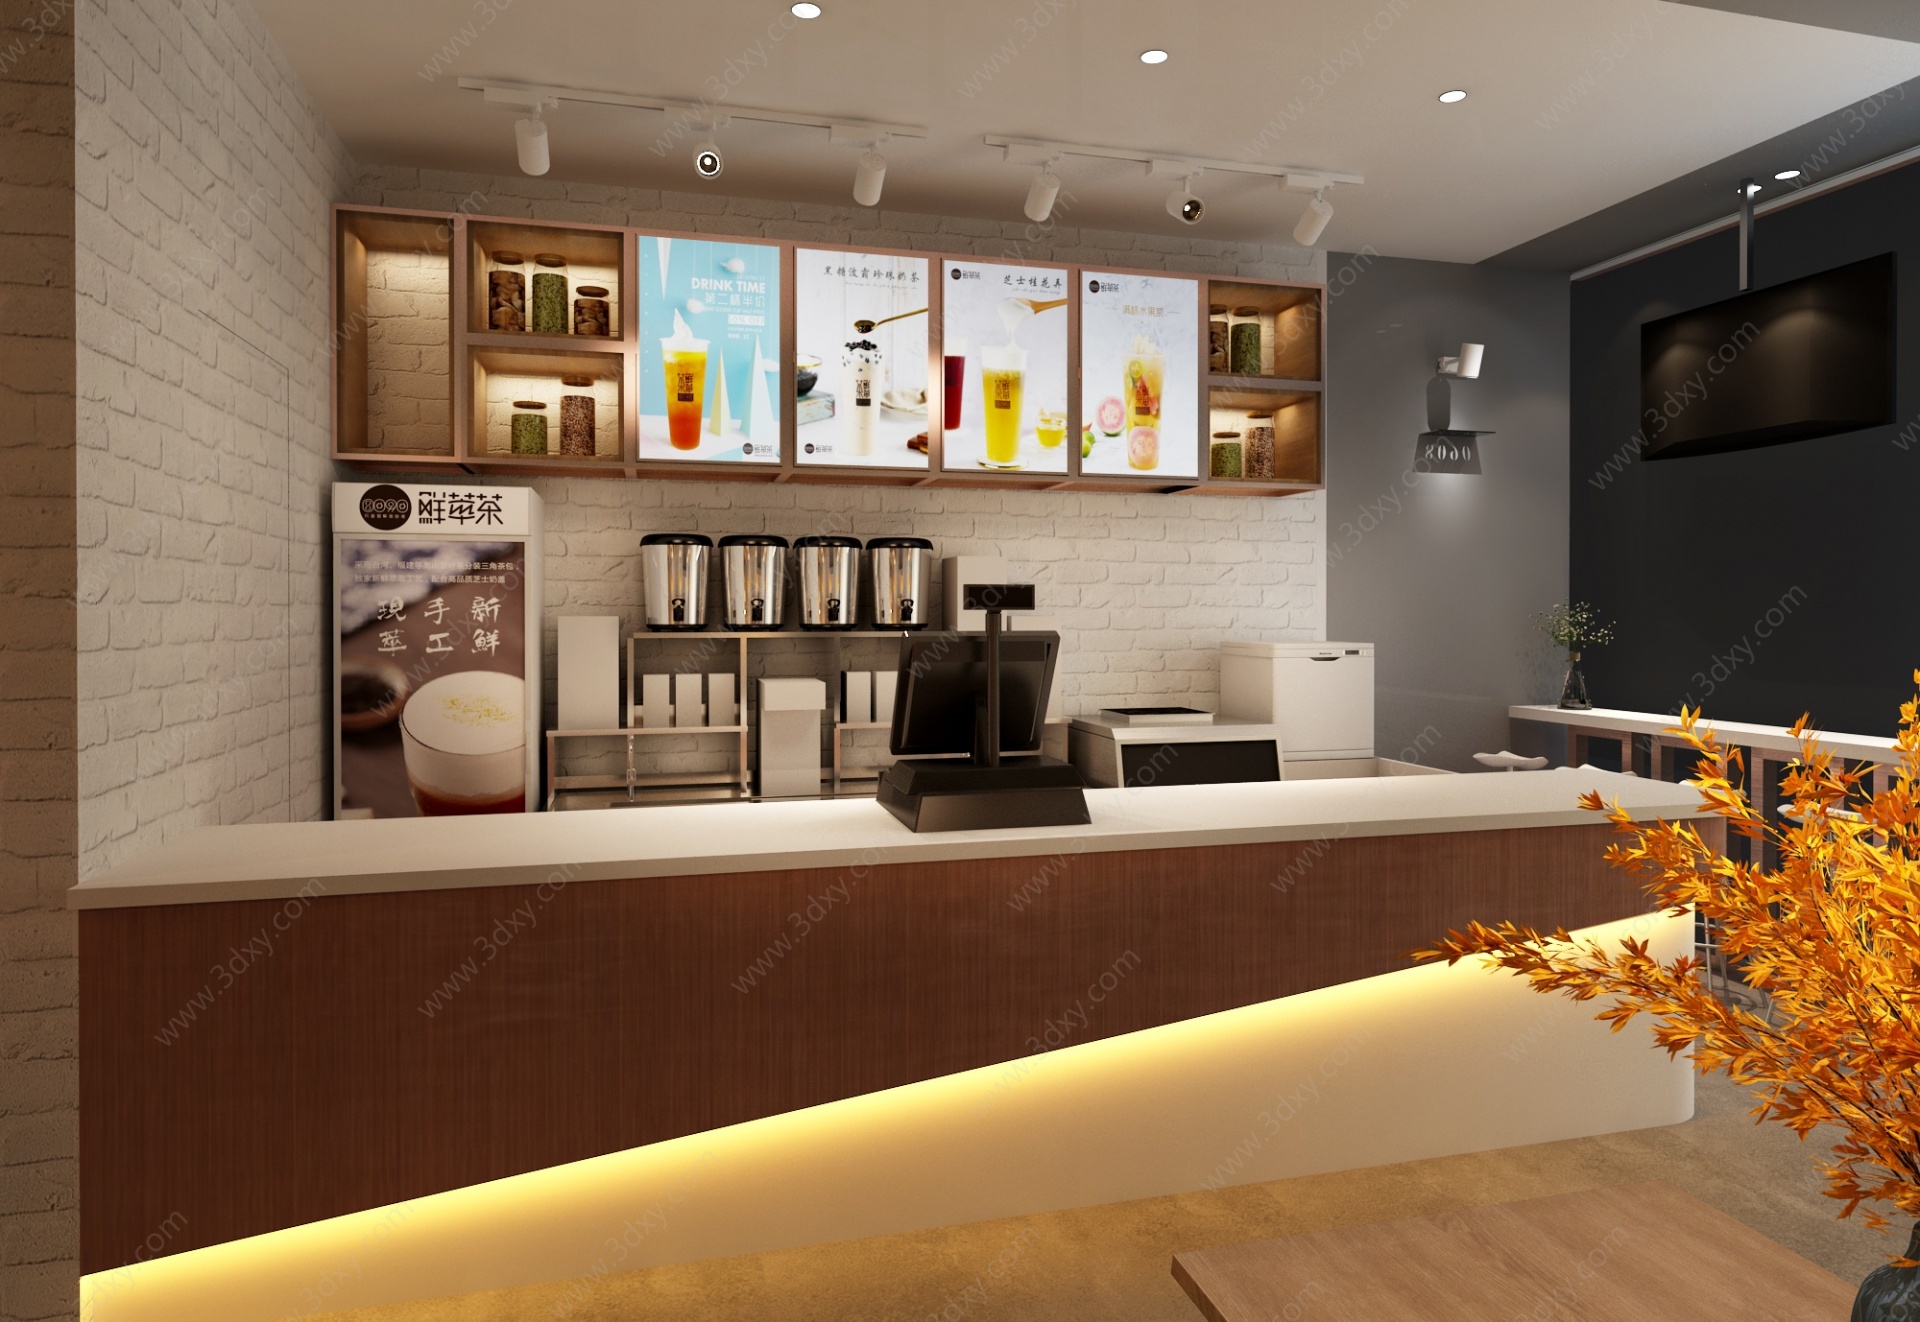 现代奶茶店餐饮店3D模型